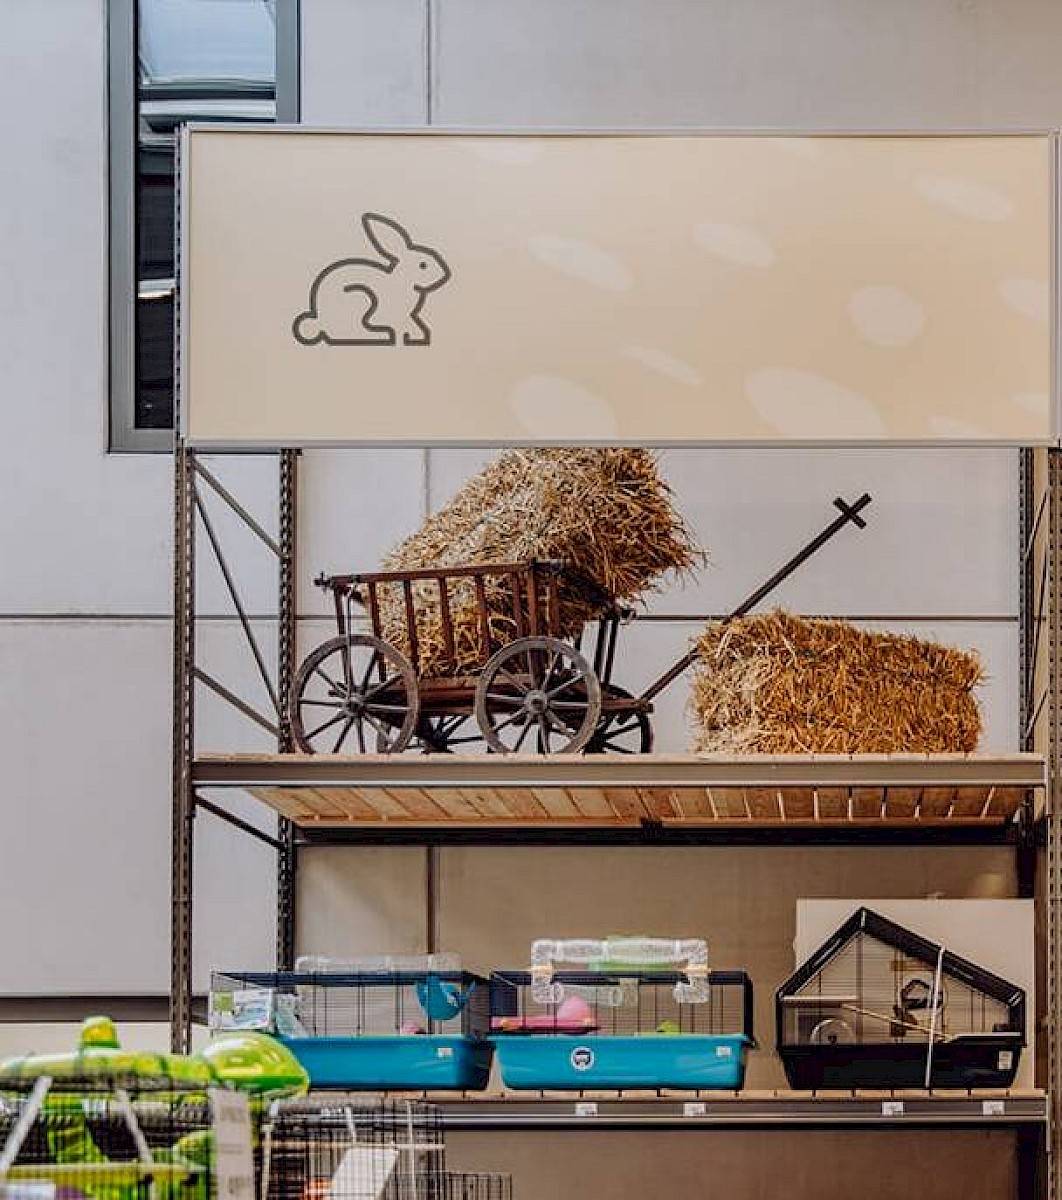 Drie kooien voor knaagdieren uitgestald op een winkelrek, daarboven een kar met hooi in en naast.